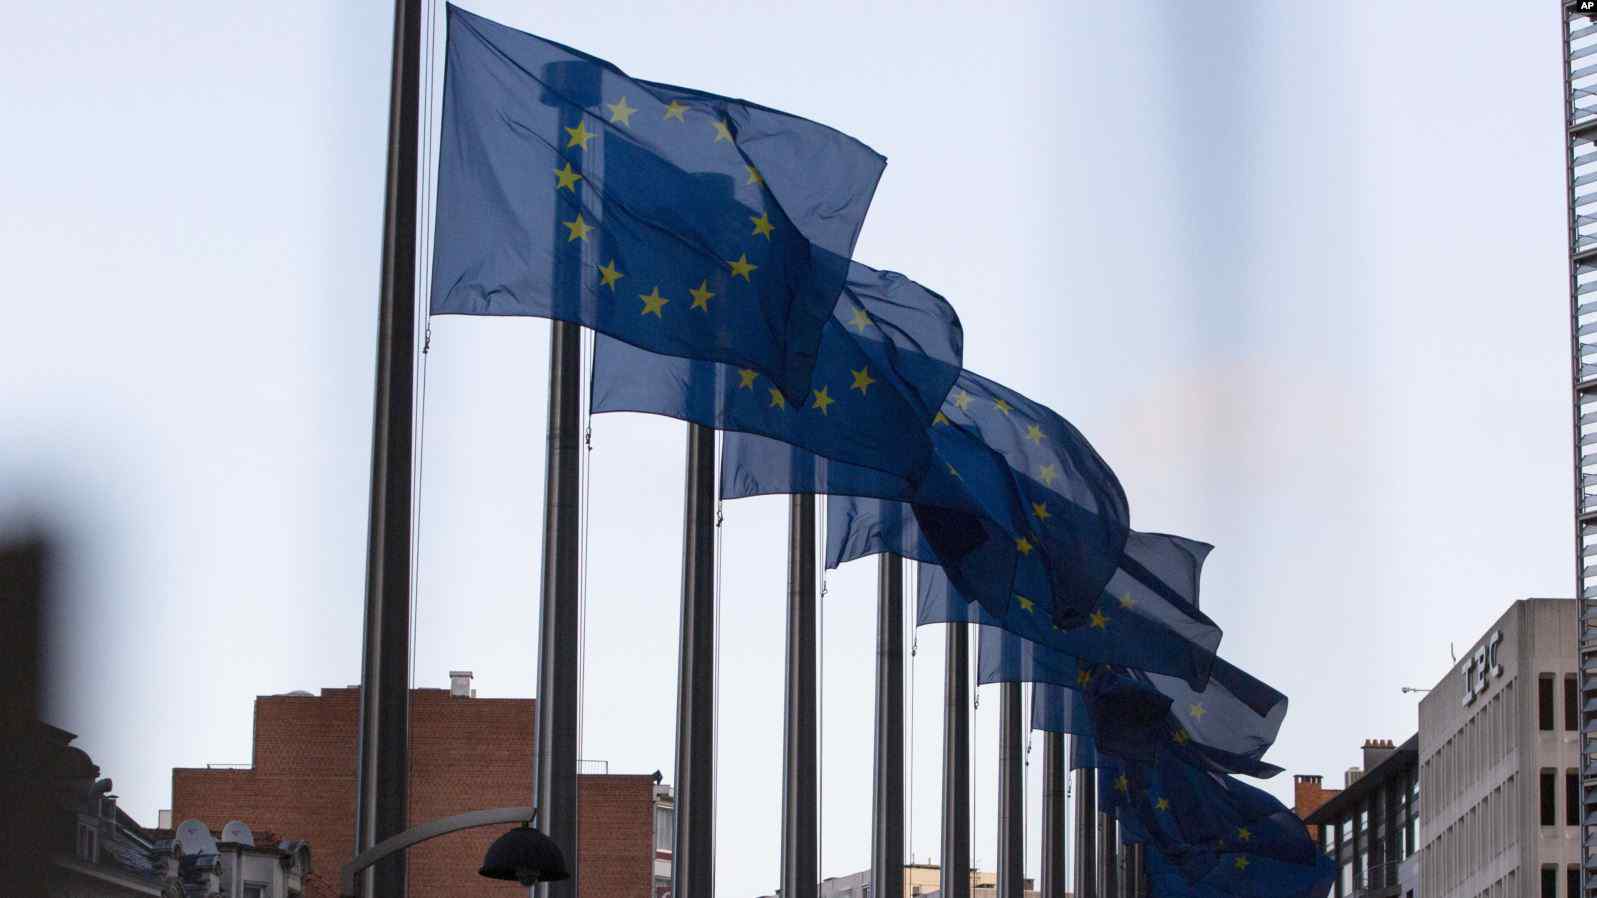  BE-ja me porosi të dykuptimshme – marrëveshja çështje muajsh, por pa afate artificiale